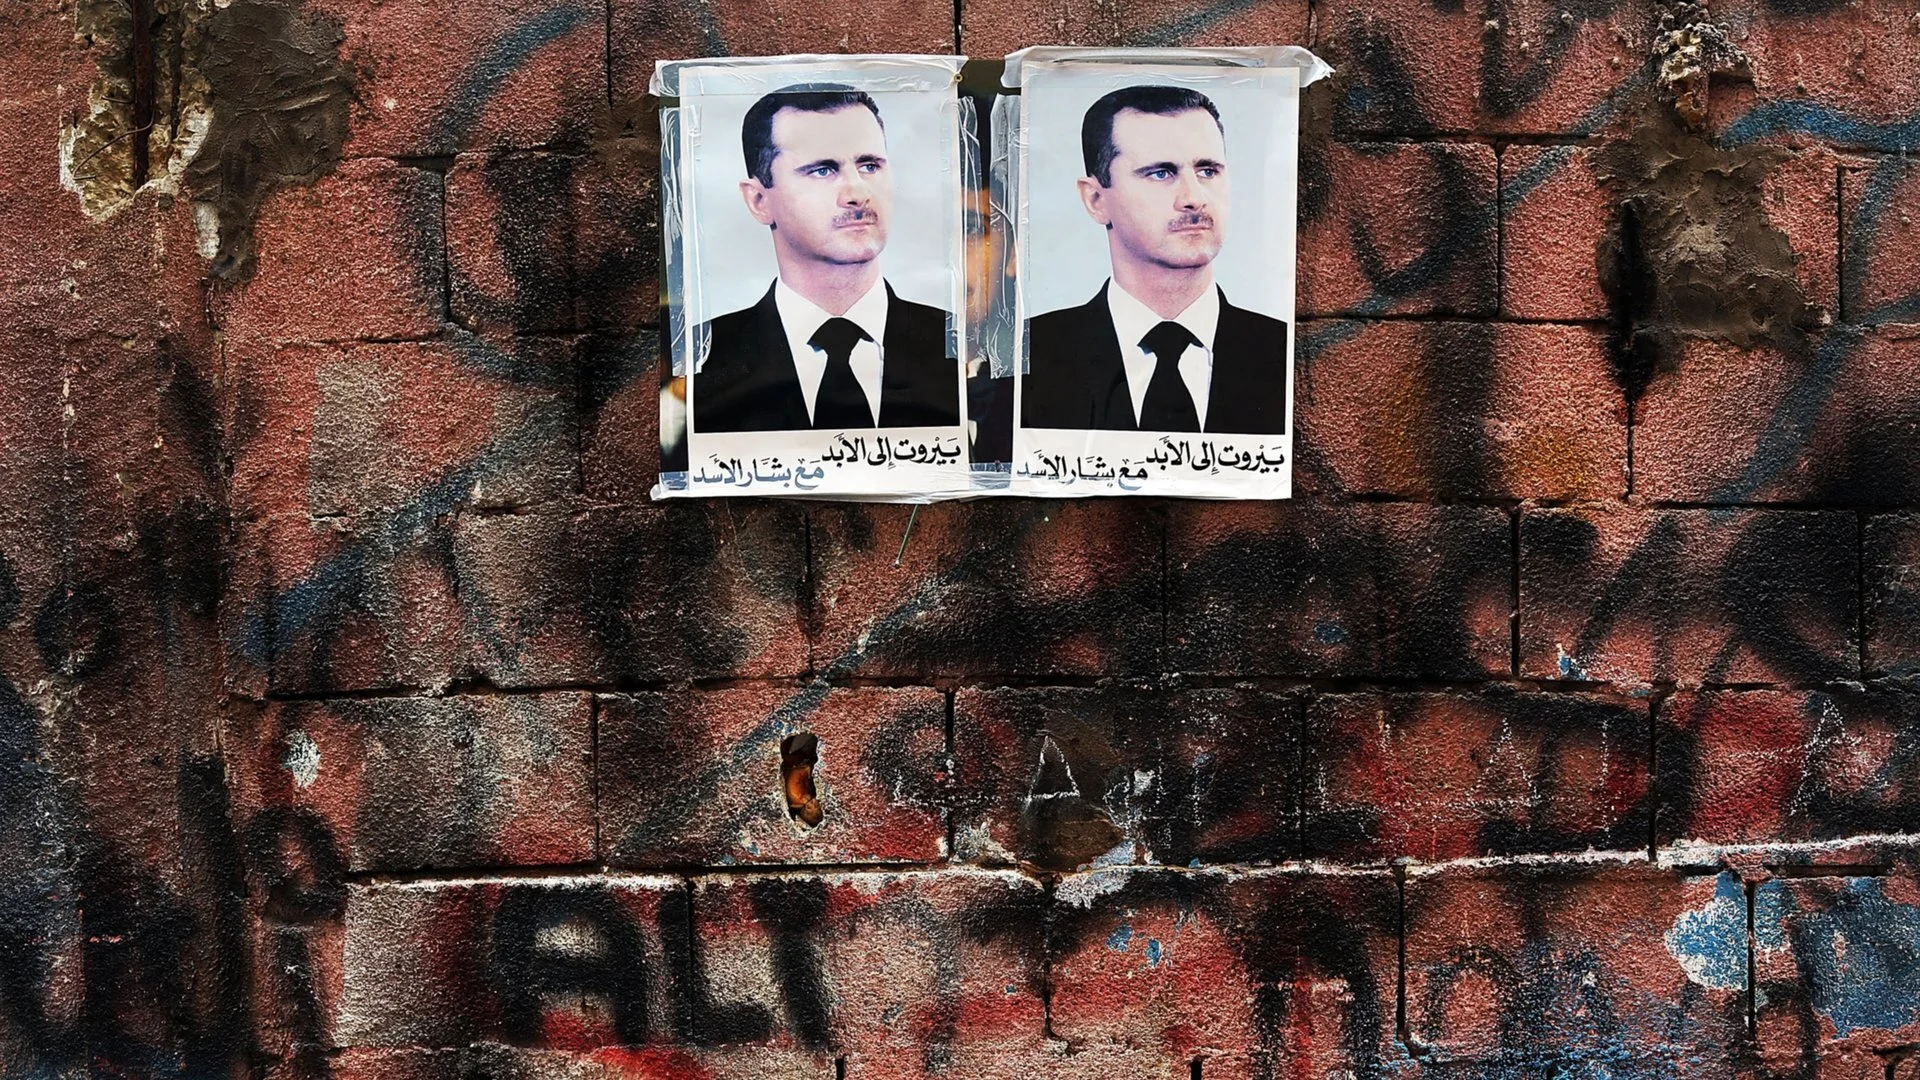 Франция издаде заповед за арест на сирийския президент Башар Асад